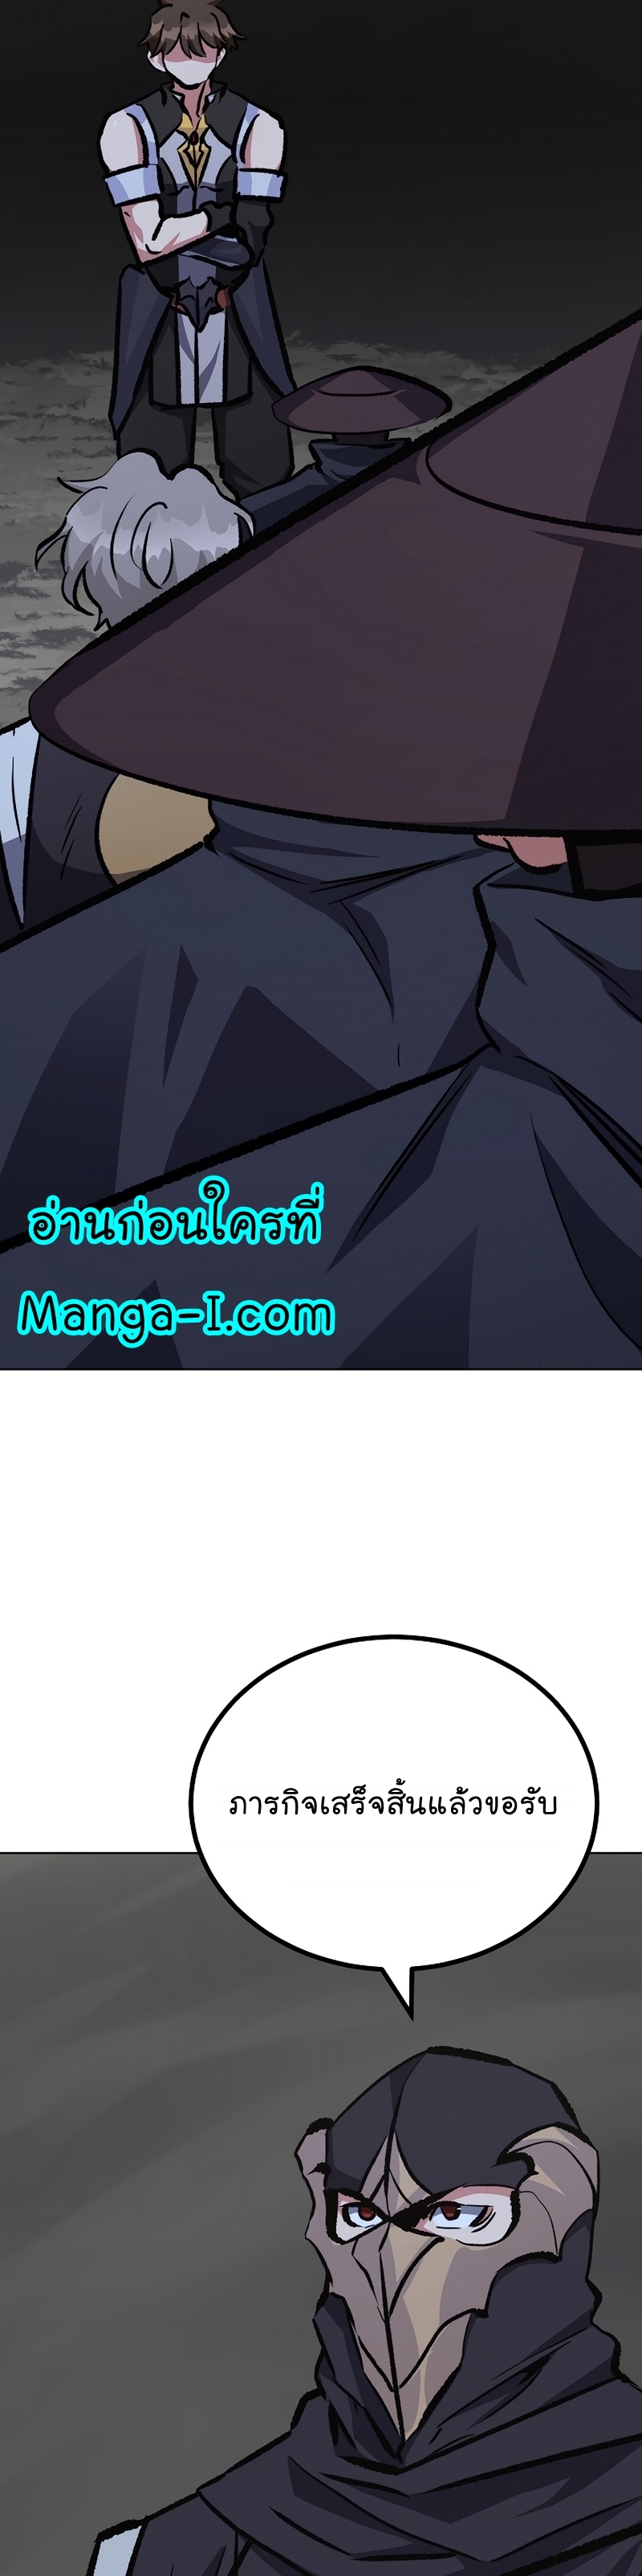 Manga Manhwa Level 1 Player 67 (40)